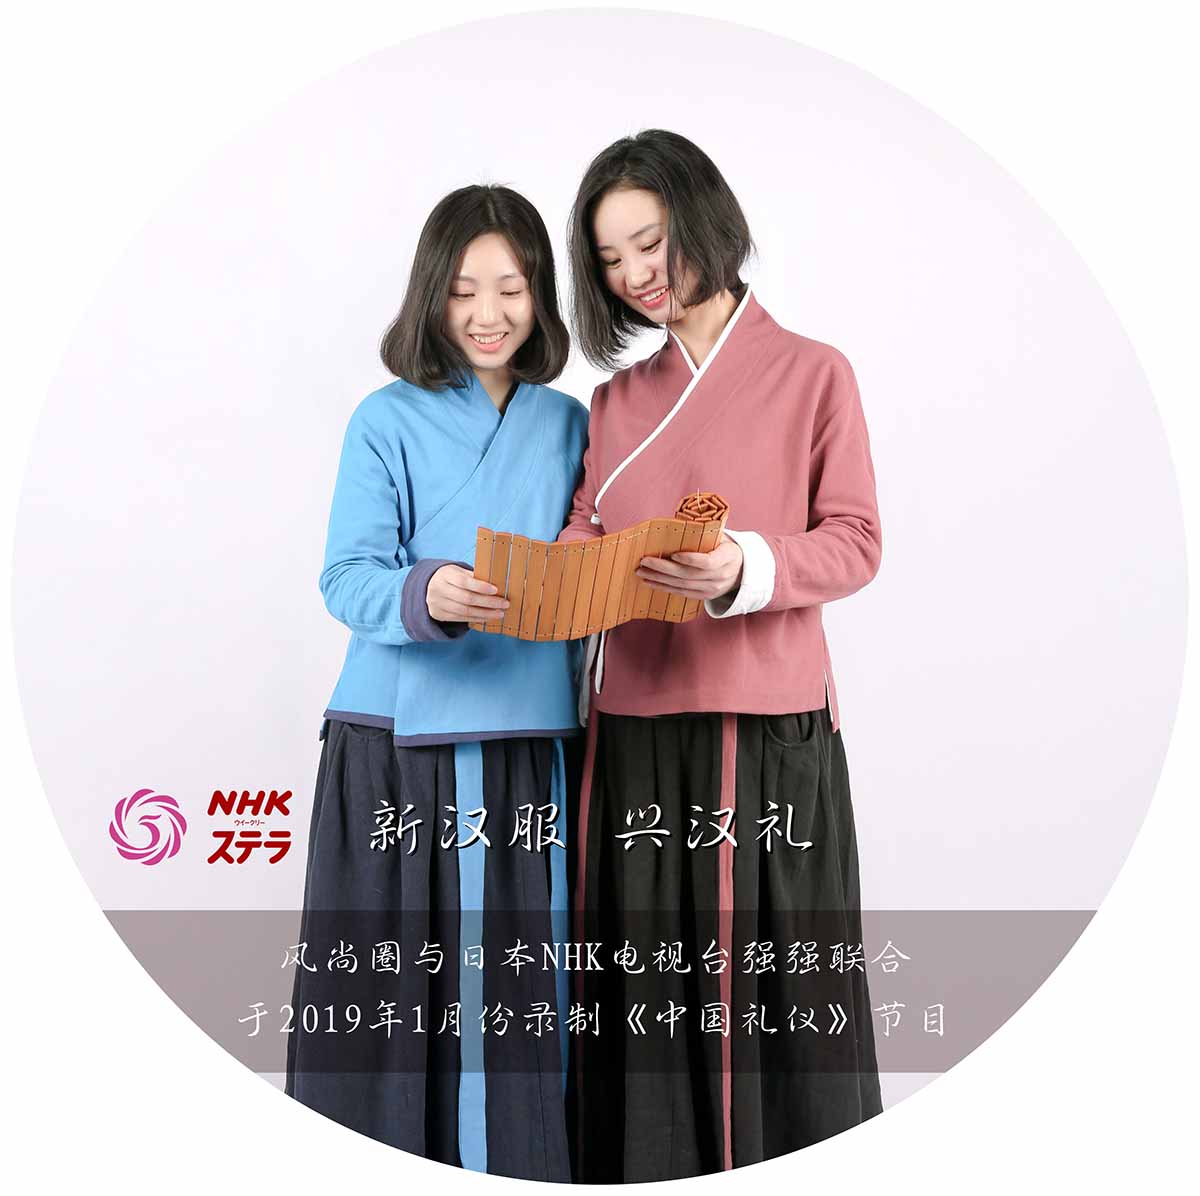 风尚圈与日本NHK电视台将于2019年1月份联合录制《中国礼仪》节目